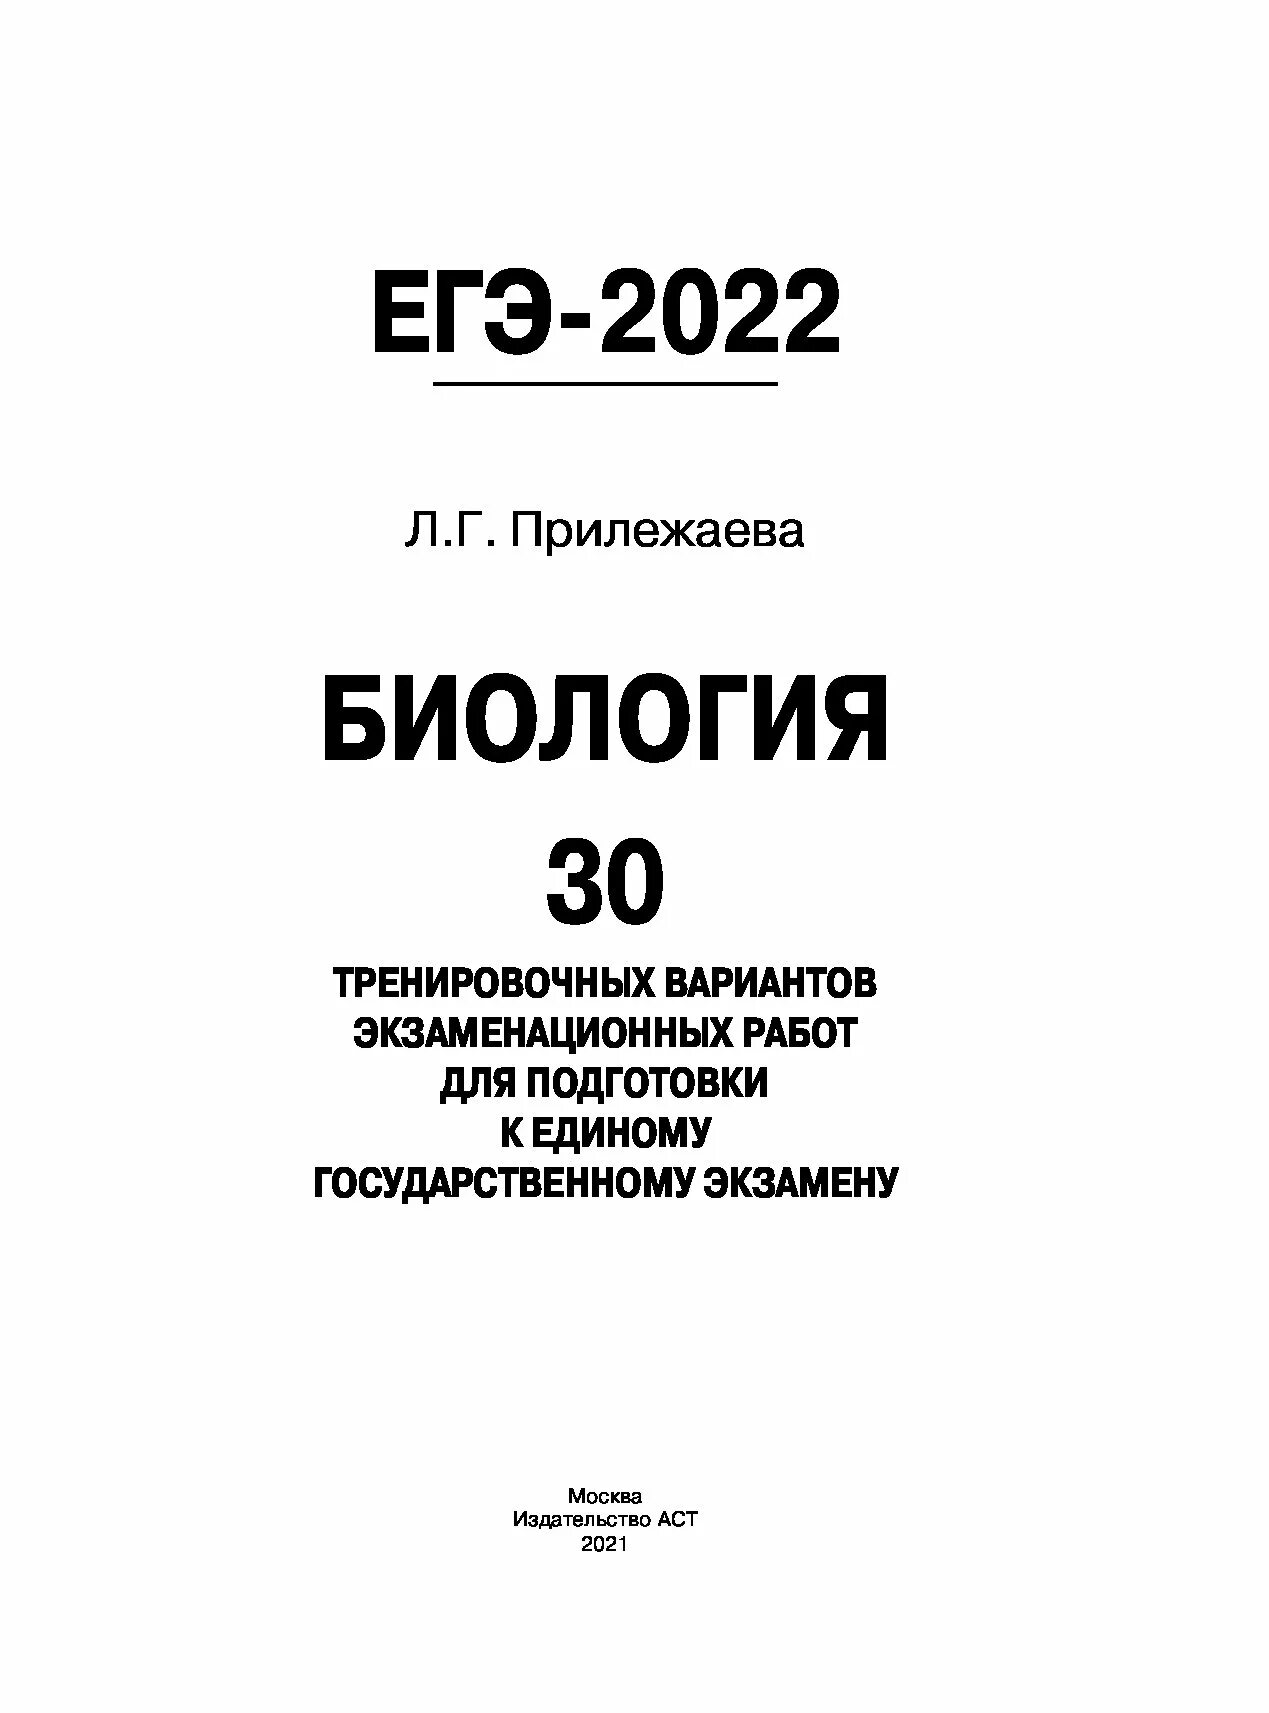 Подготовка к егэ 11 биология. Биология (ЕГЭ). Биология ЕГЭ 2021. ЕГЭ биология 2022. ЕГЭ 2020 биология.